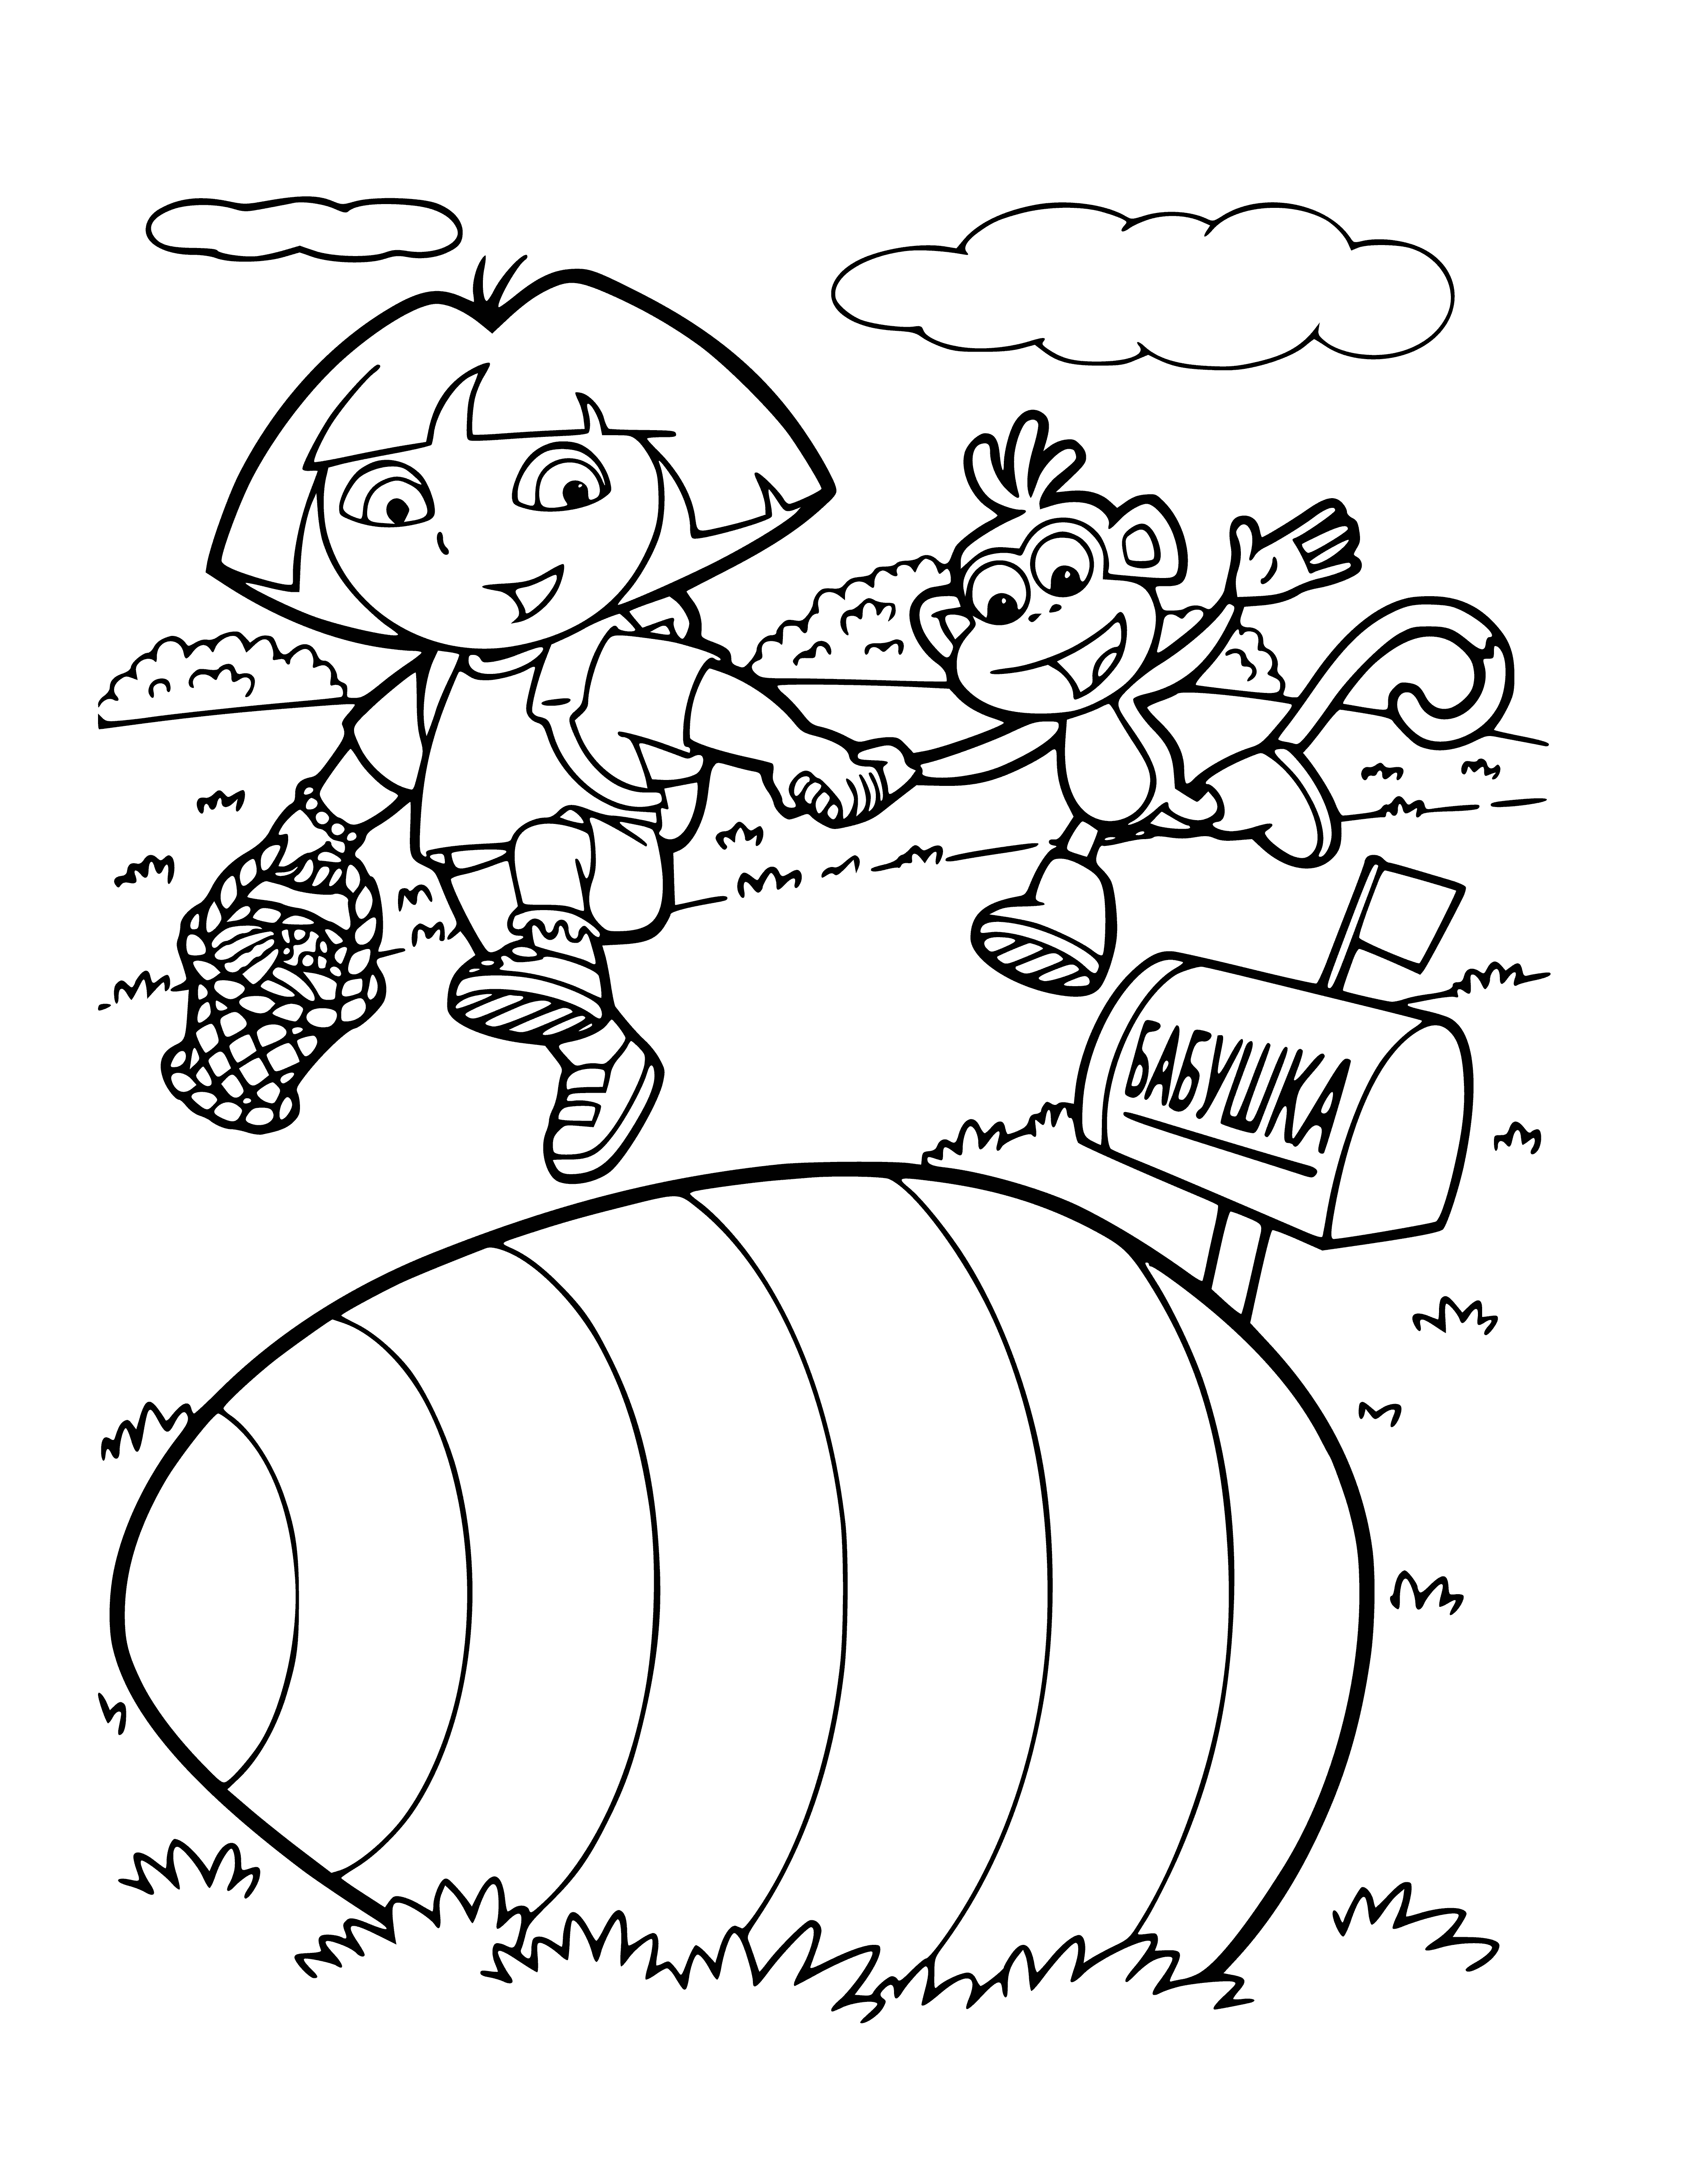 Dora coloring page